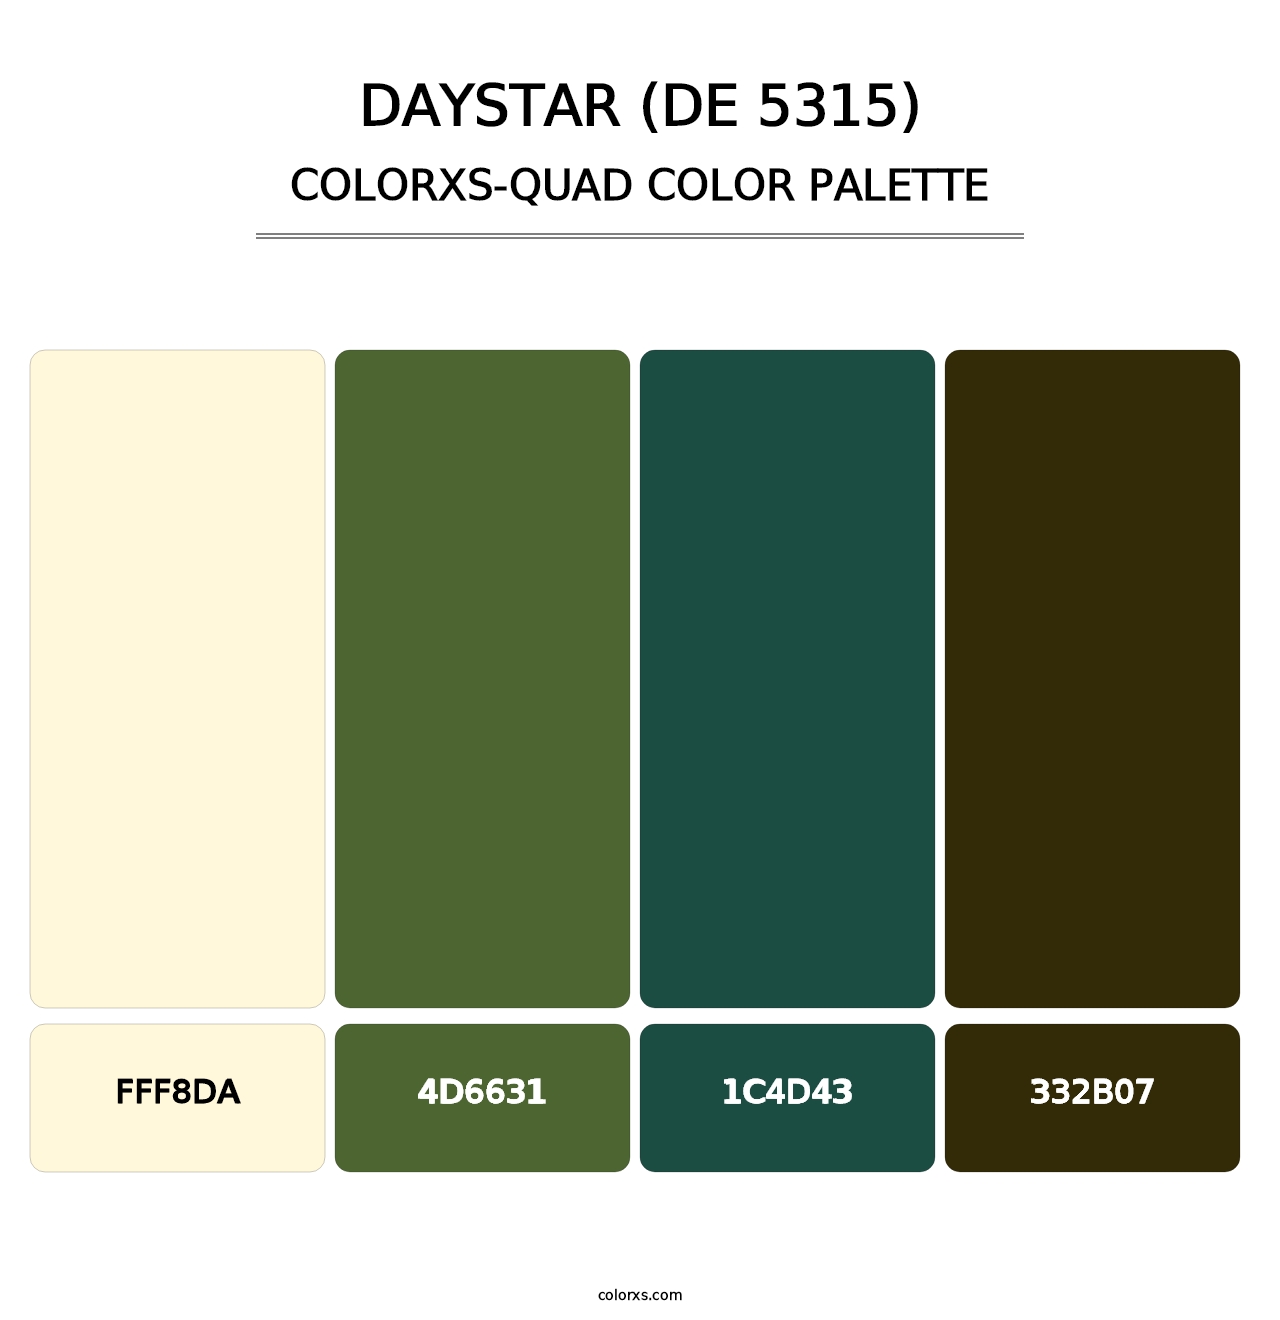 Daystar (DE 5315) - Colorxs Quad Palette